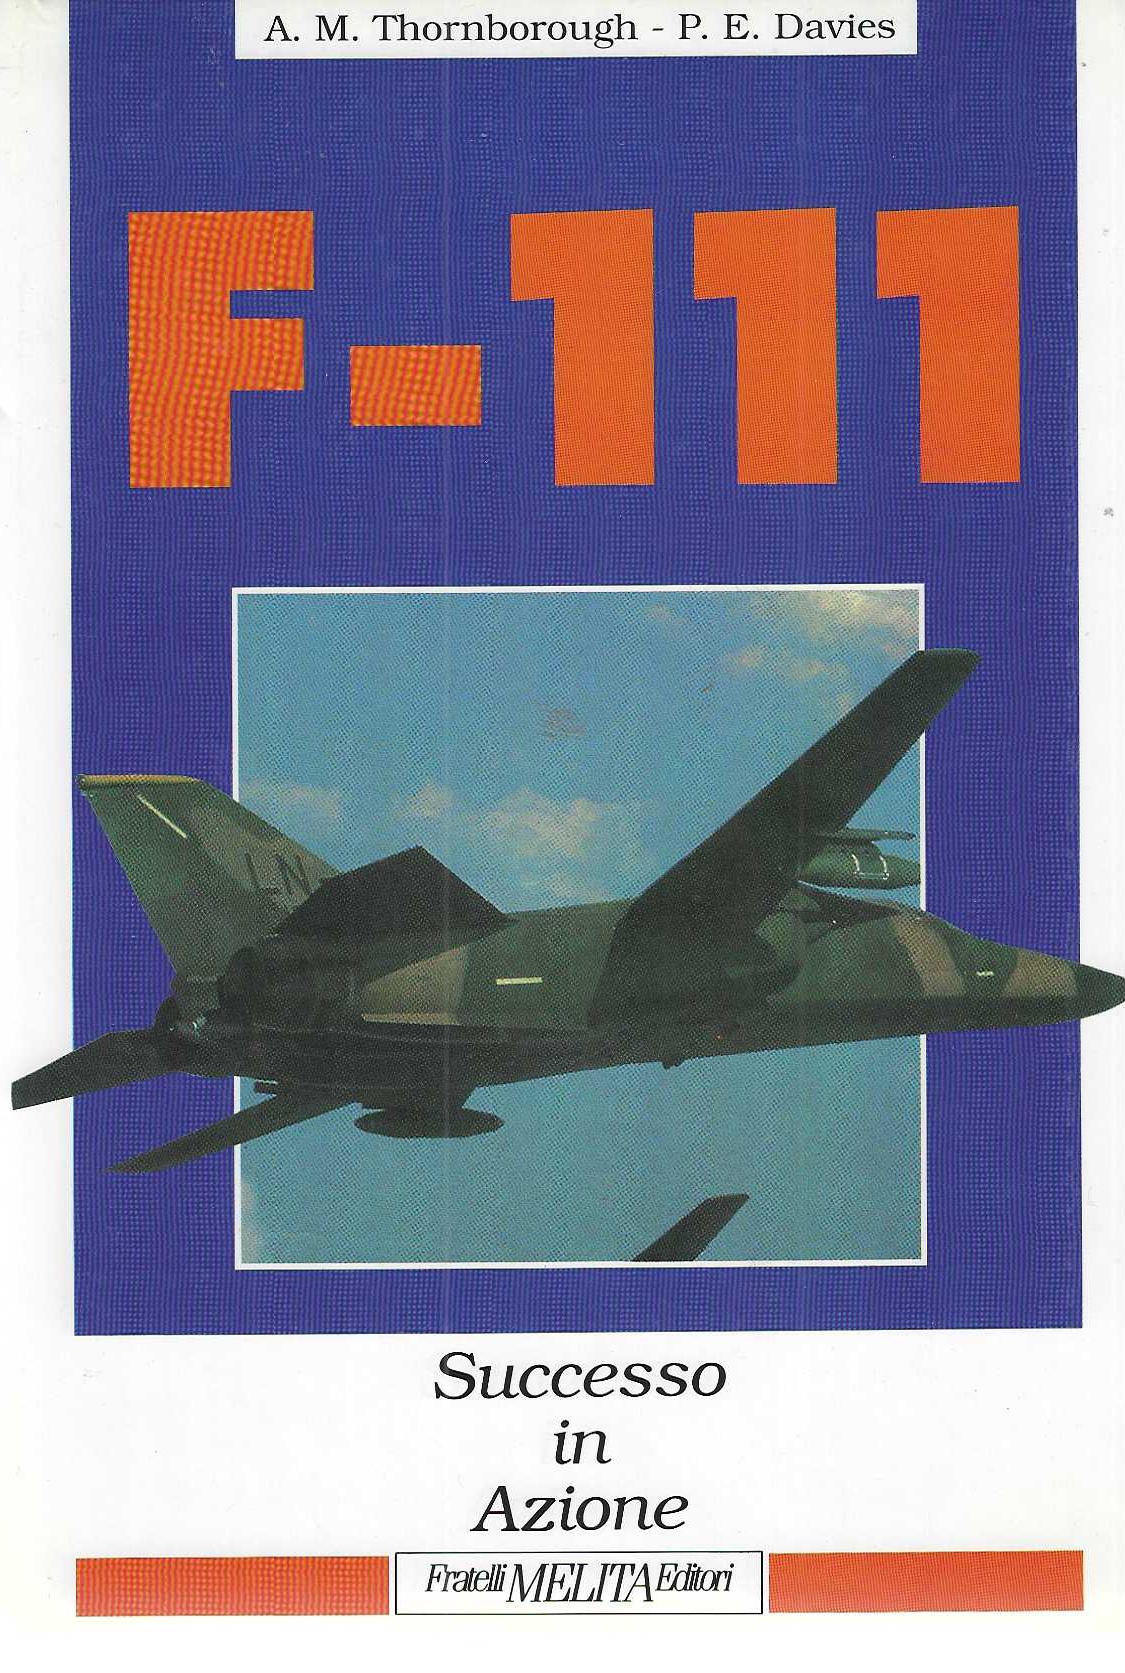 "F-111" "Successo in azione"